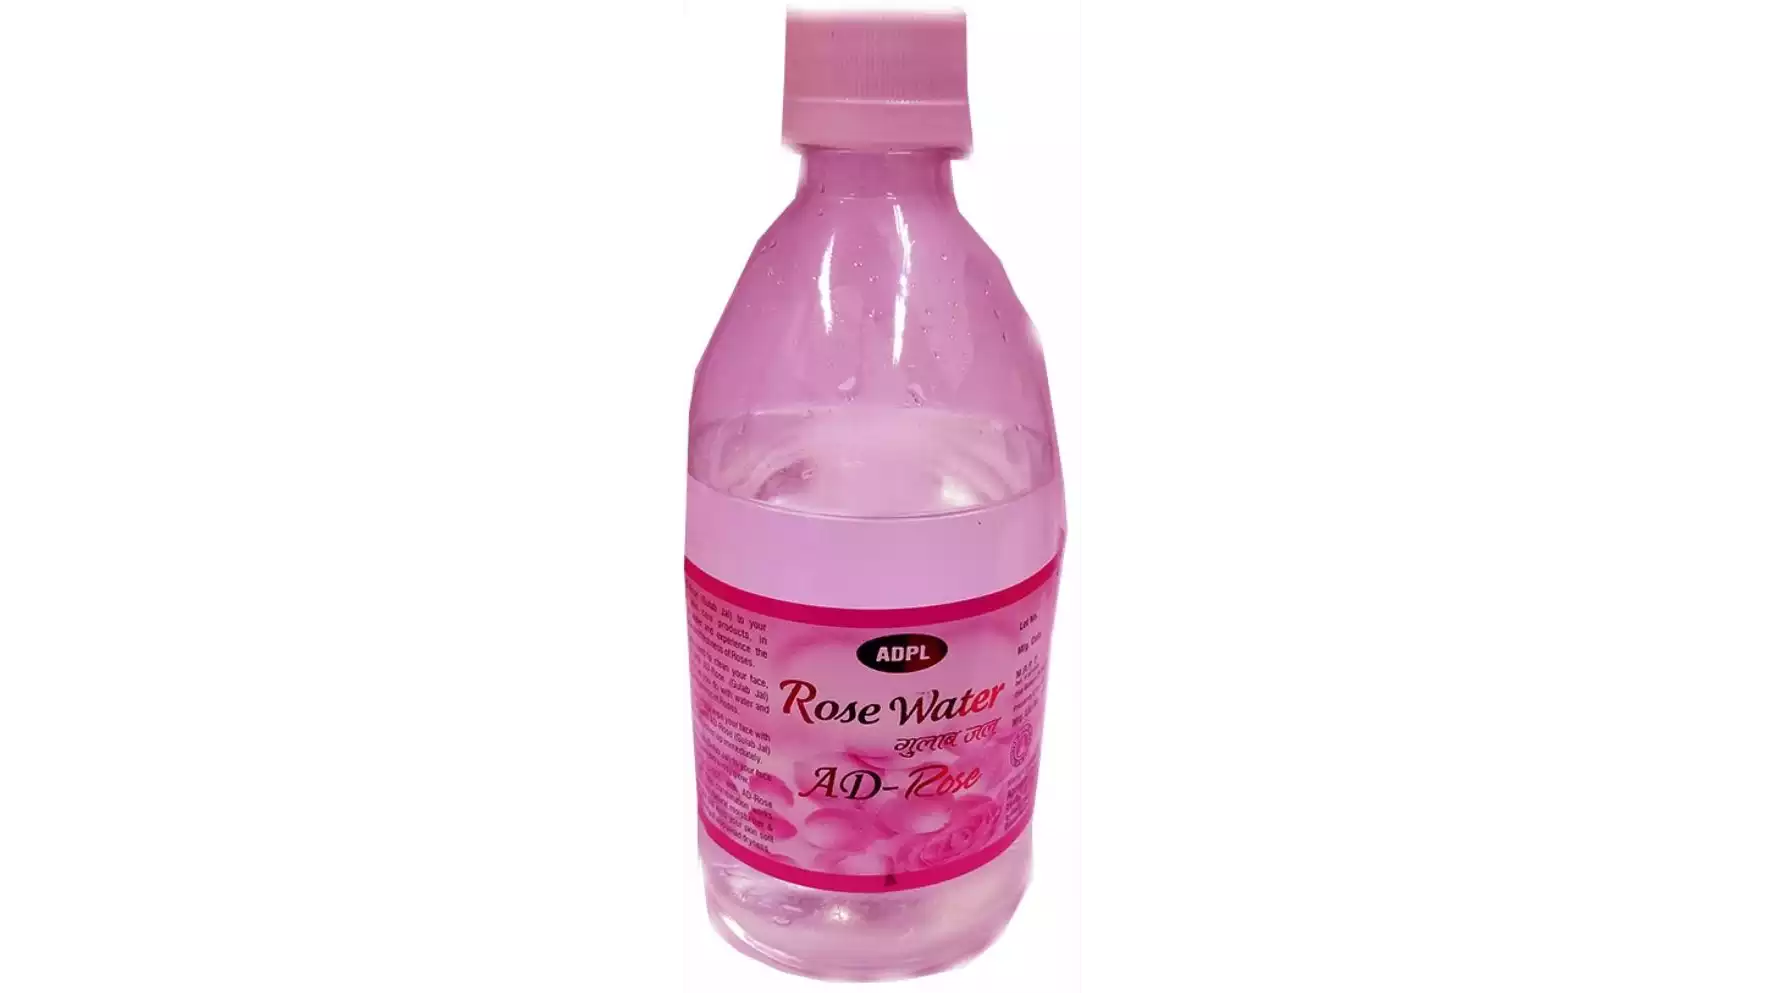 ADPL Ad Rose (Rose Water) (500ml)